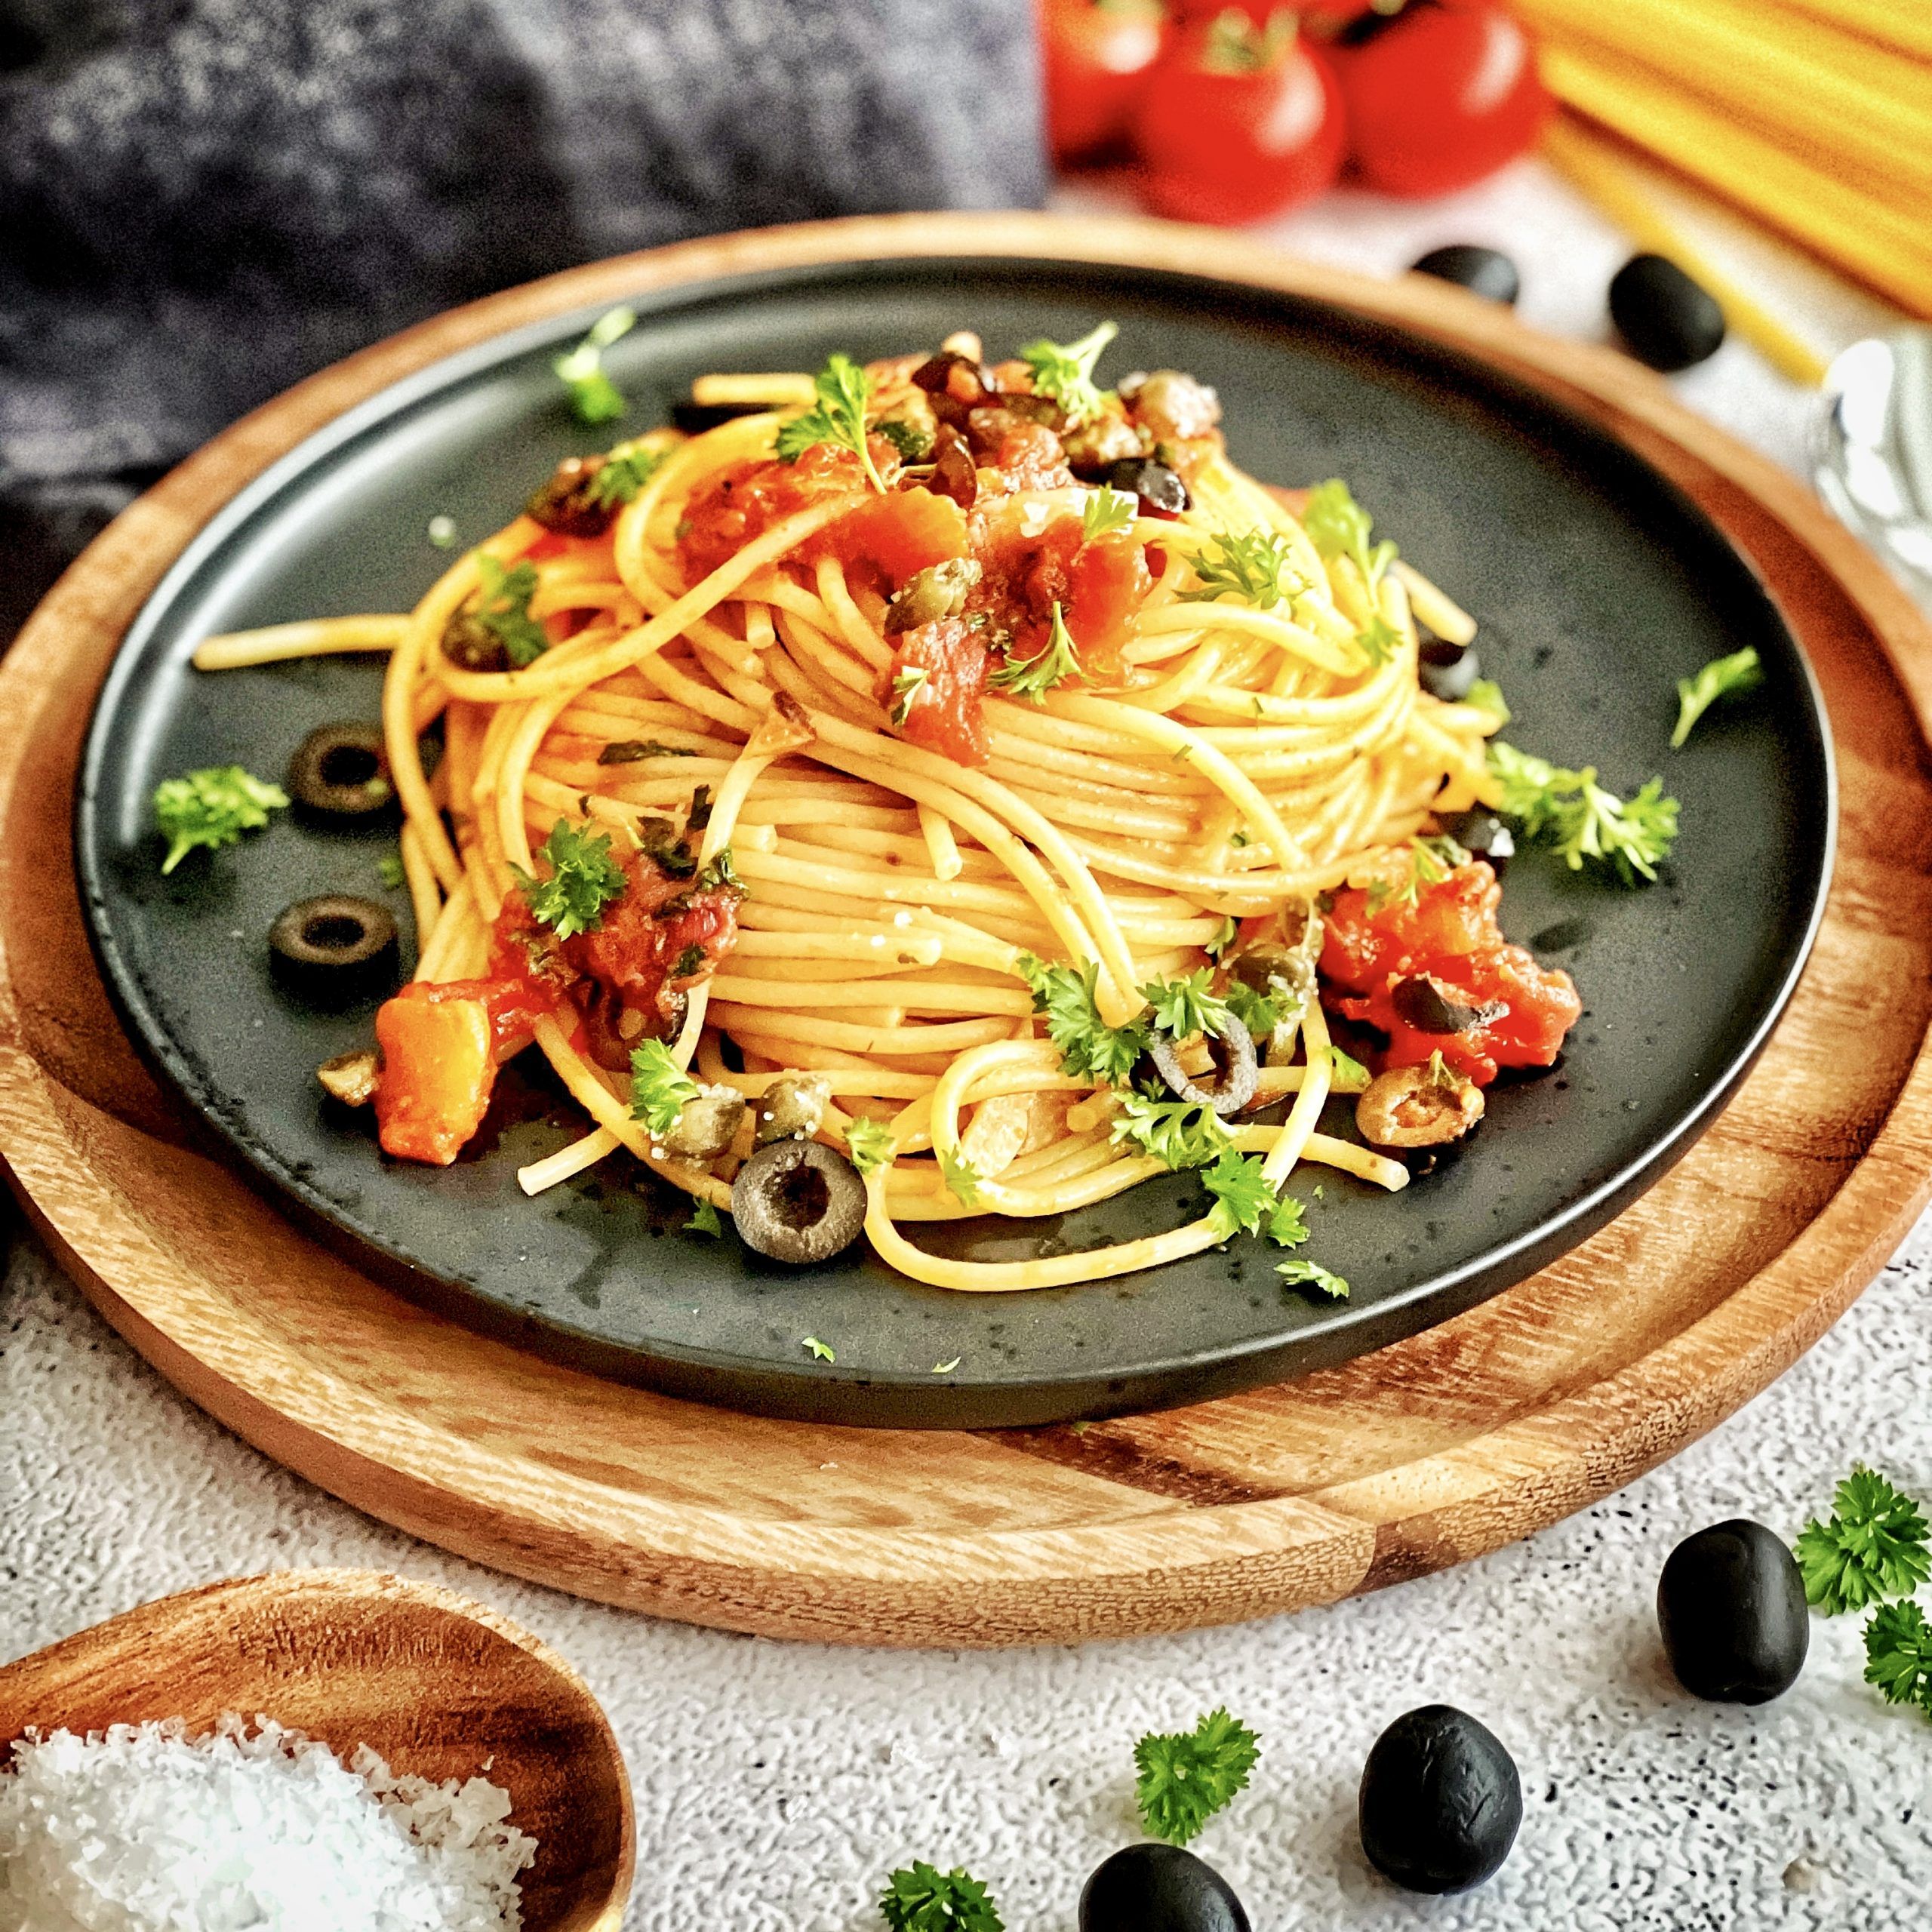  Nudeln Hintergrundbild 2560x2560. Spaghetti alla puttanesca